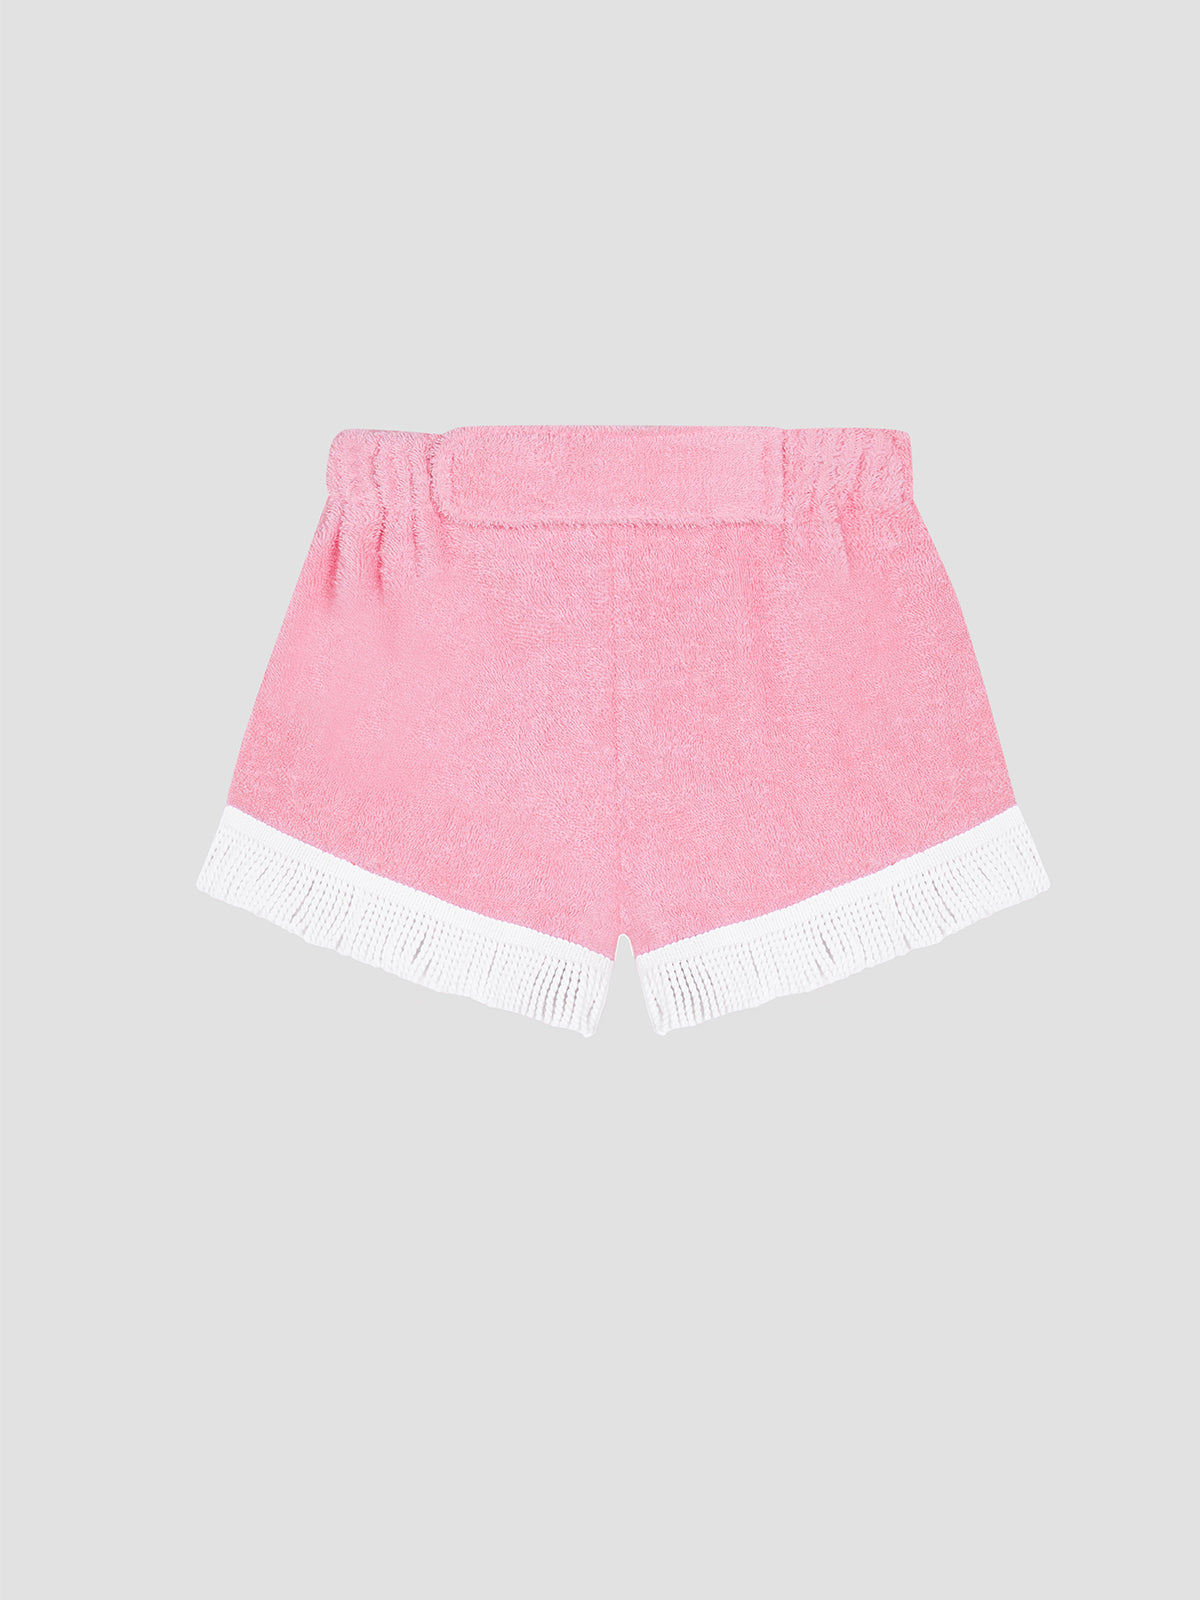 wild summer shorts in pink cotton